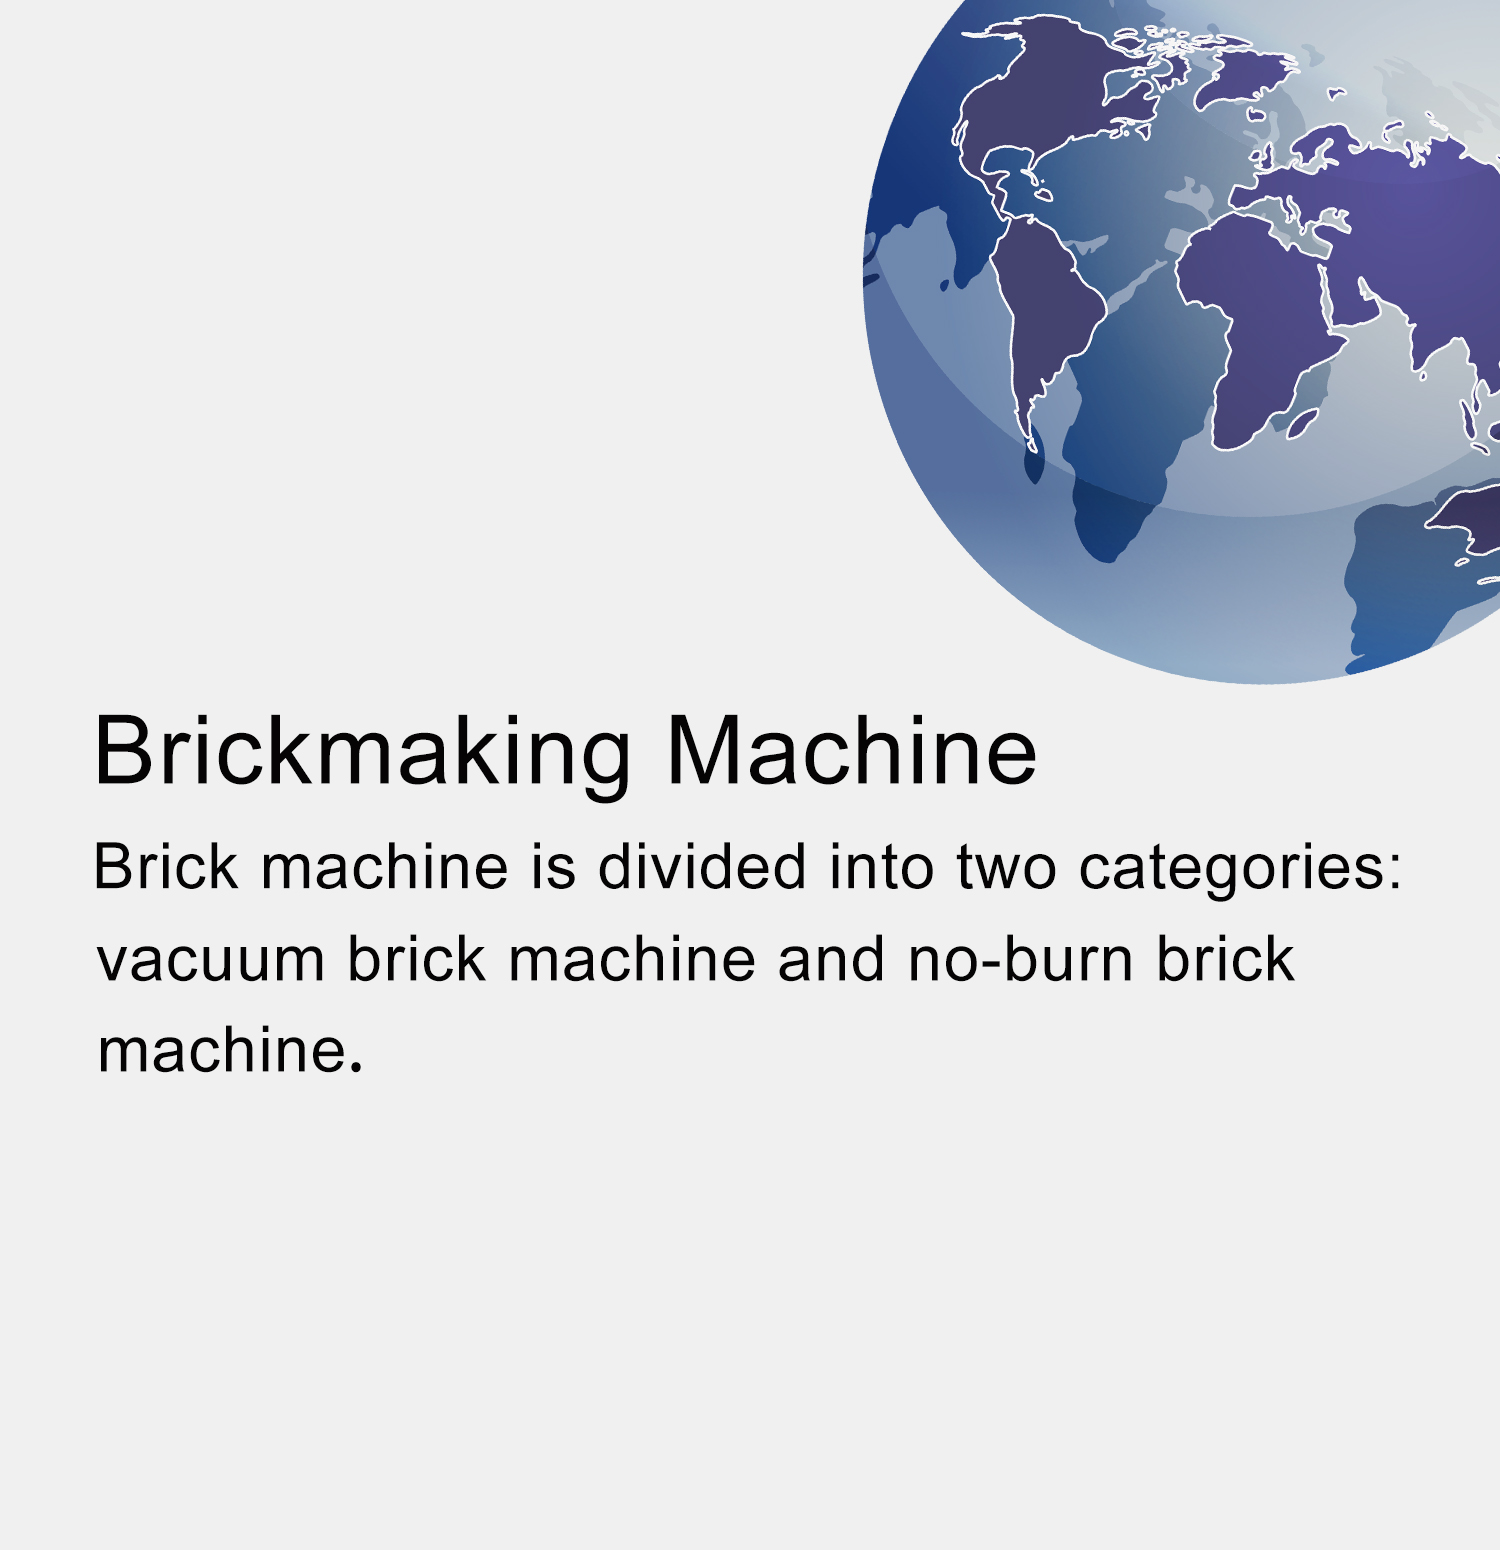 Brickmaking Machine